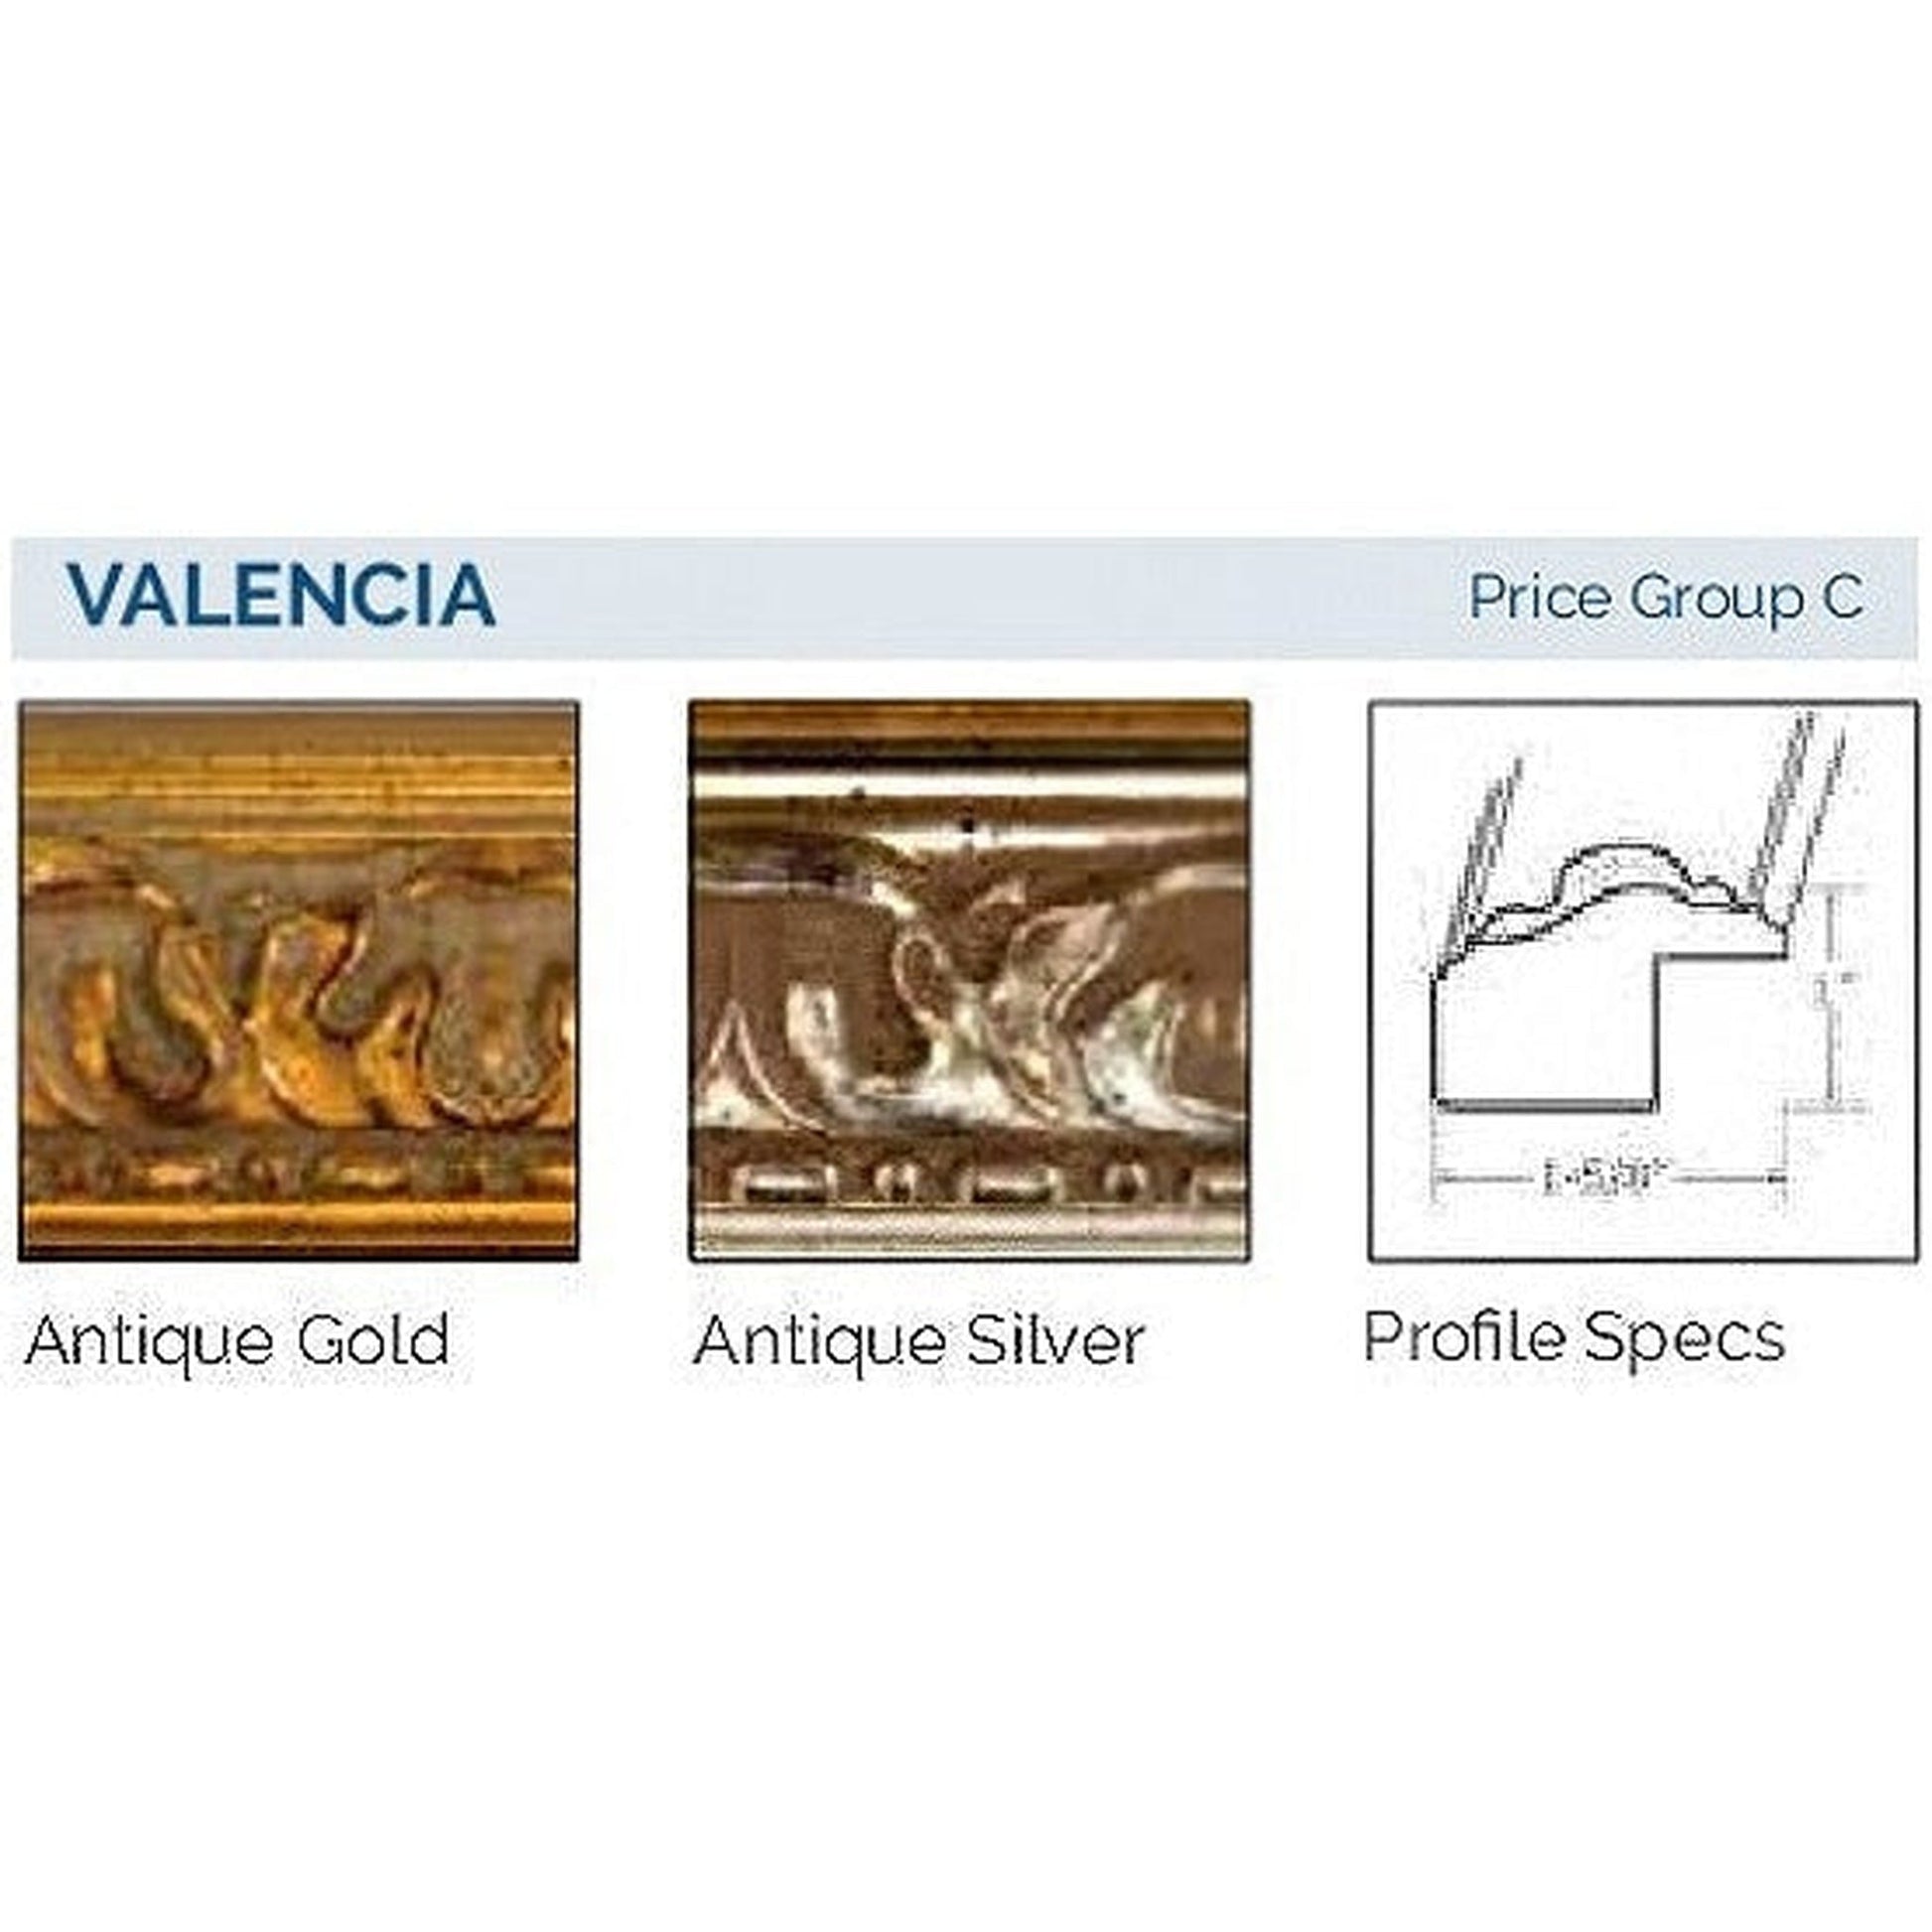 Afina Signature 33" x 23" Valencia Antique Gold Recessed Retro-Fit Double Door Medicine Cabinet With Beveled Edge Mirror